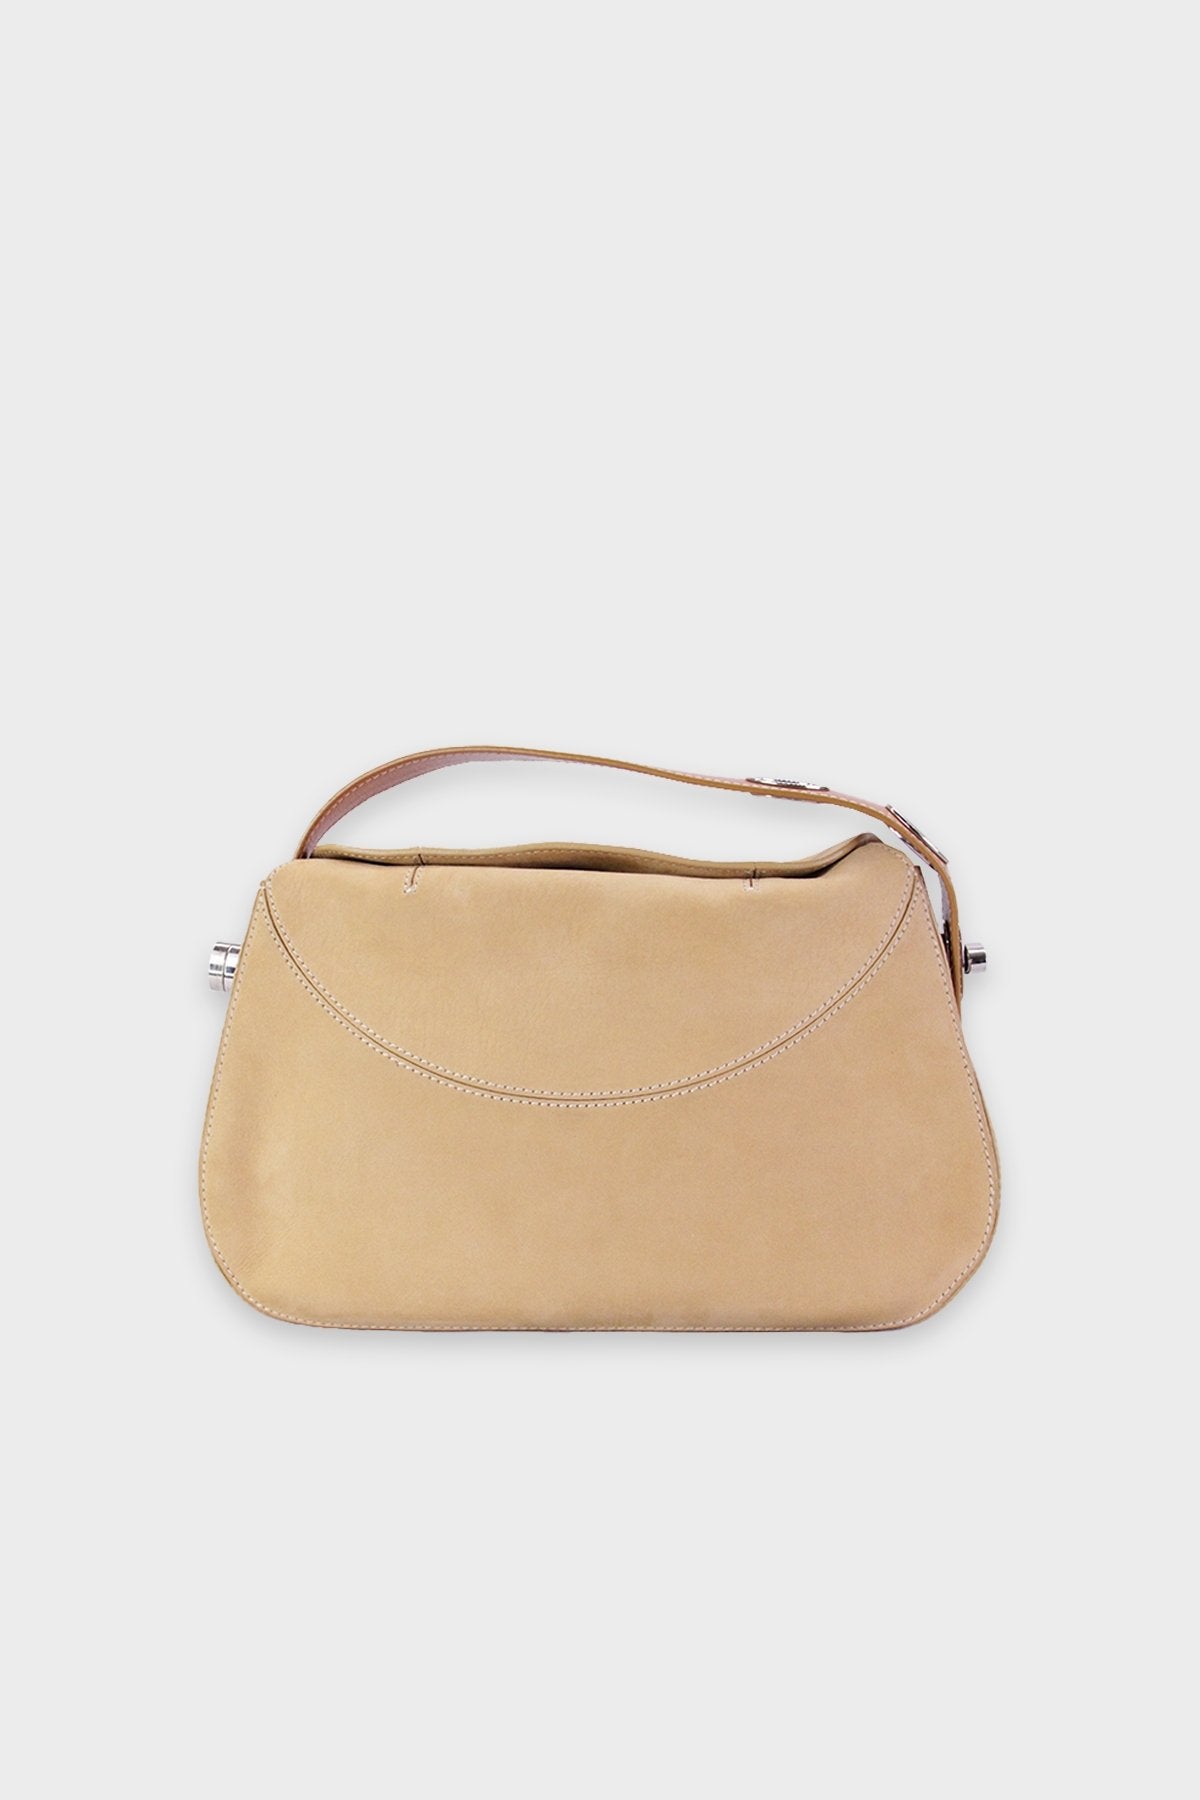 Tod's Beige Suede Handbag with Adjustable Strap - shop-olivia.com